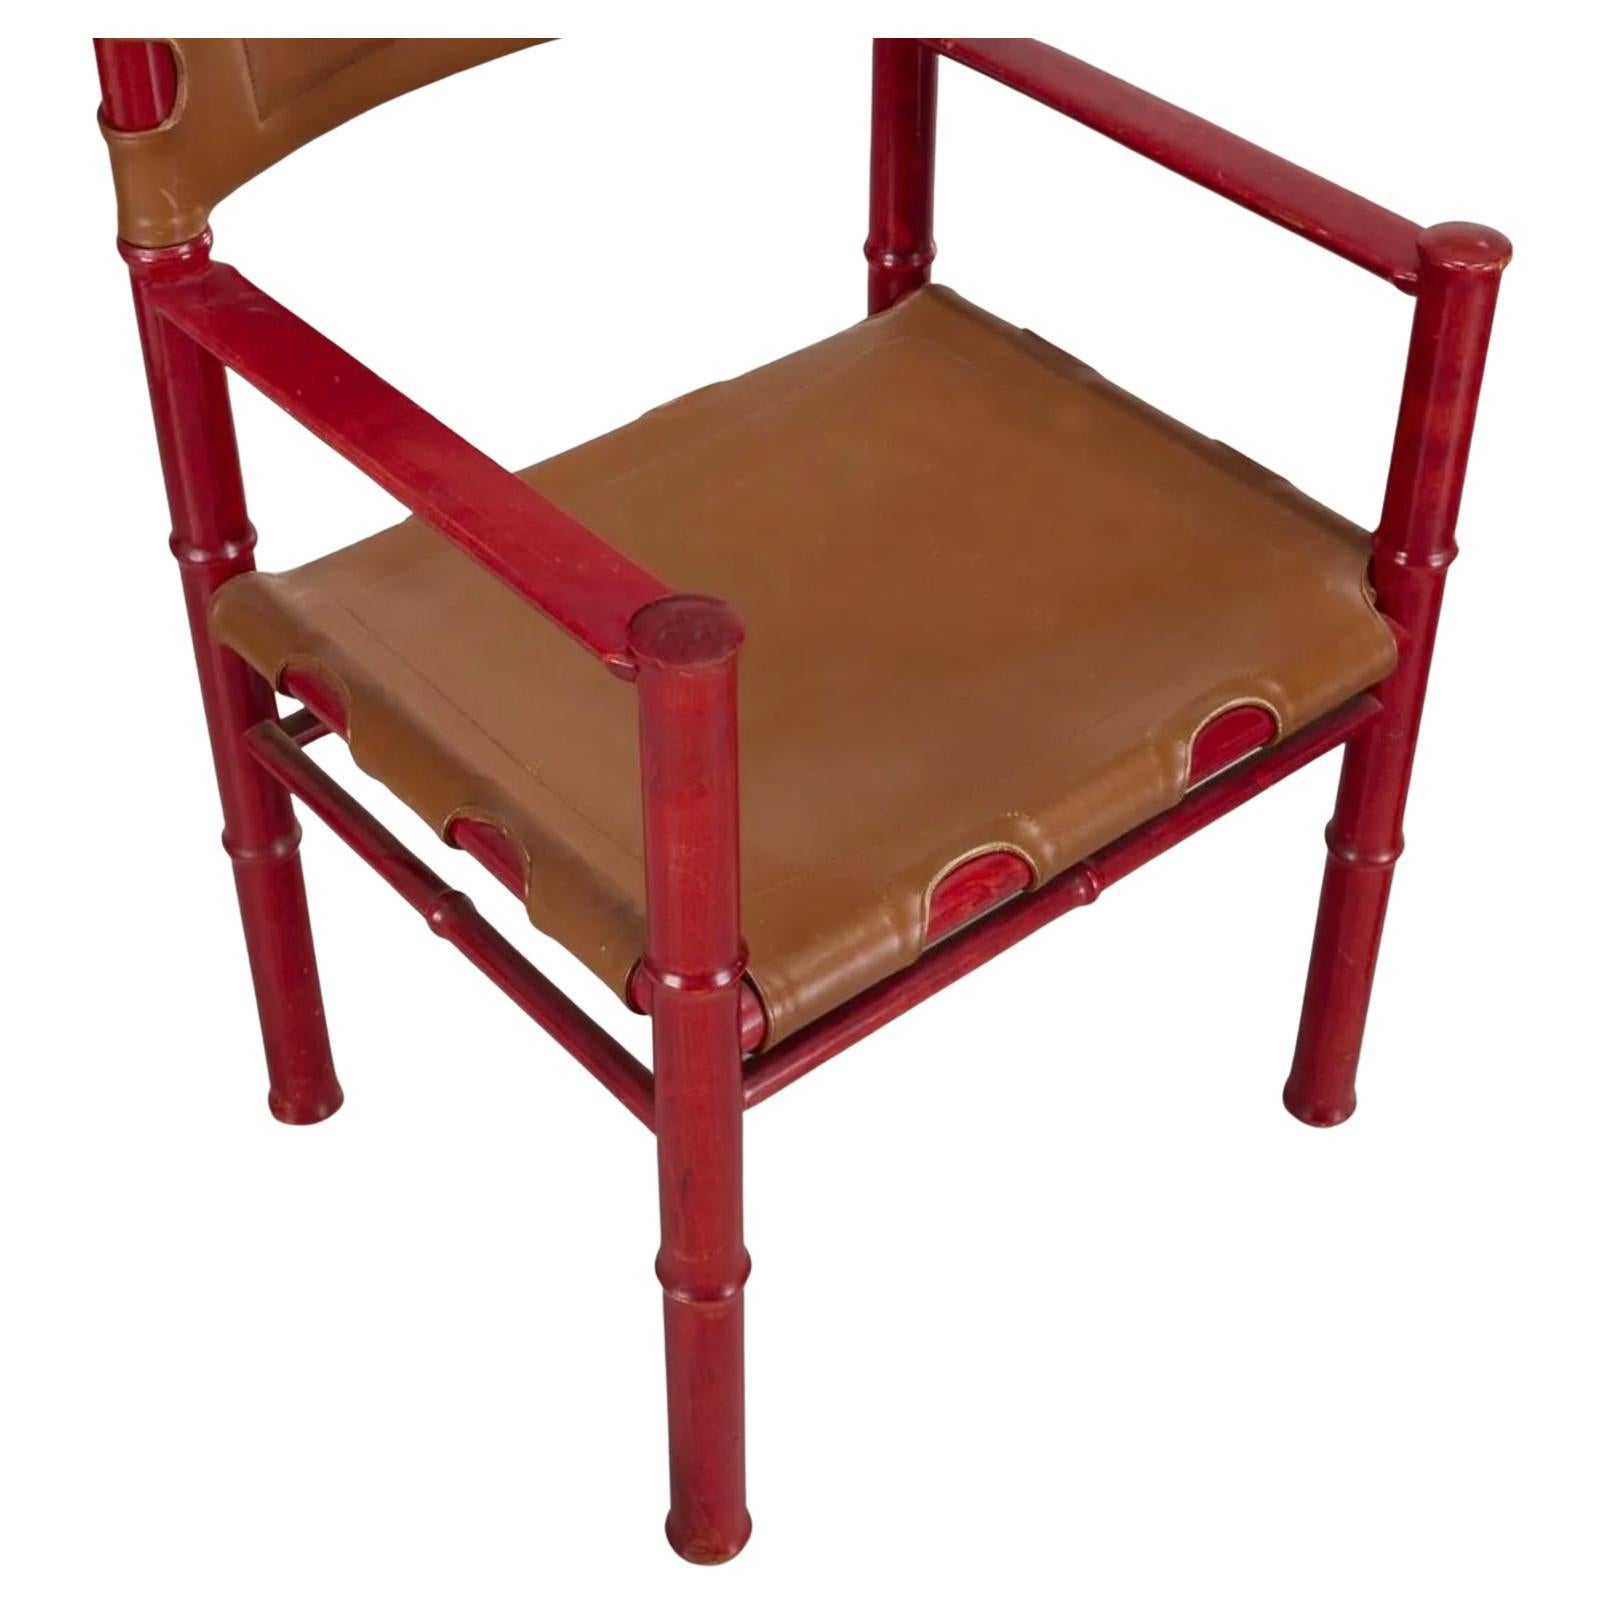 (6) Chaises de salle à manger Modern Scandinavian Mid Century Red Brown Leather Asko Finland. Très rare ensemble de chaises de salle à manger finlandaises au Design Modern Scandinavian avec un cadre en bouleau tourné peint en rouge et des sièges en